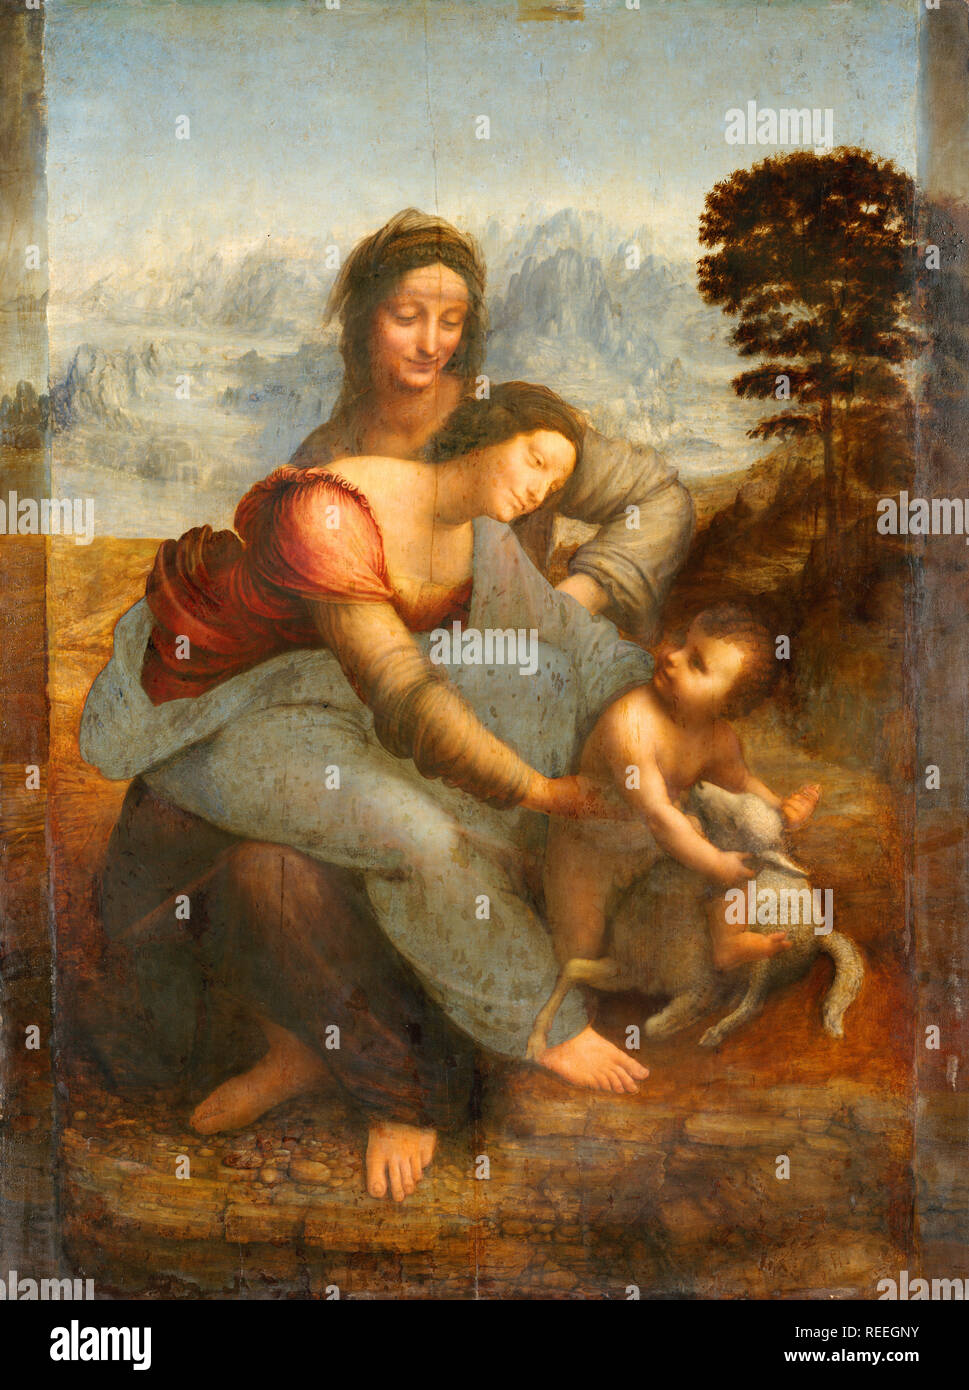 La Vergine con il Bambino e Sant'Anna, la Vergine con il Bambino e Sant'Anna di Leonardo da Vinci raffigurante Sant'Anna, sua figlia la Vergine Maria e il Bambino Gesù. Foto Stock